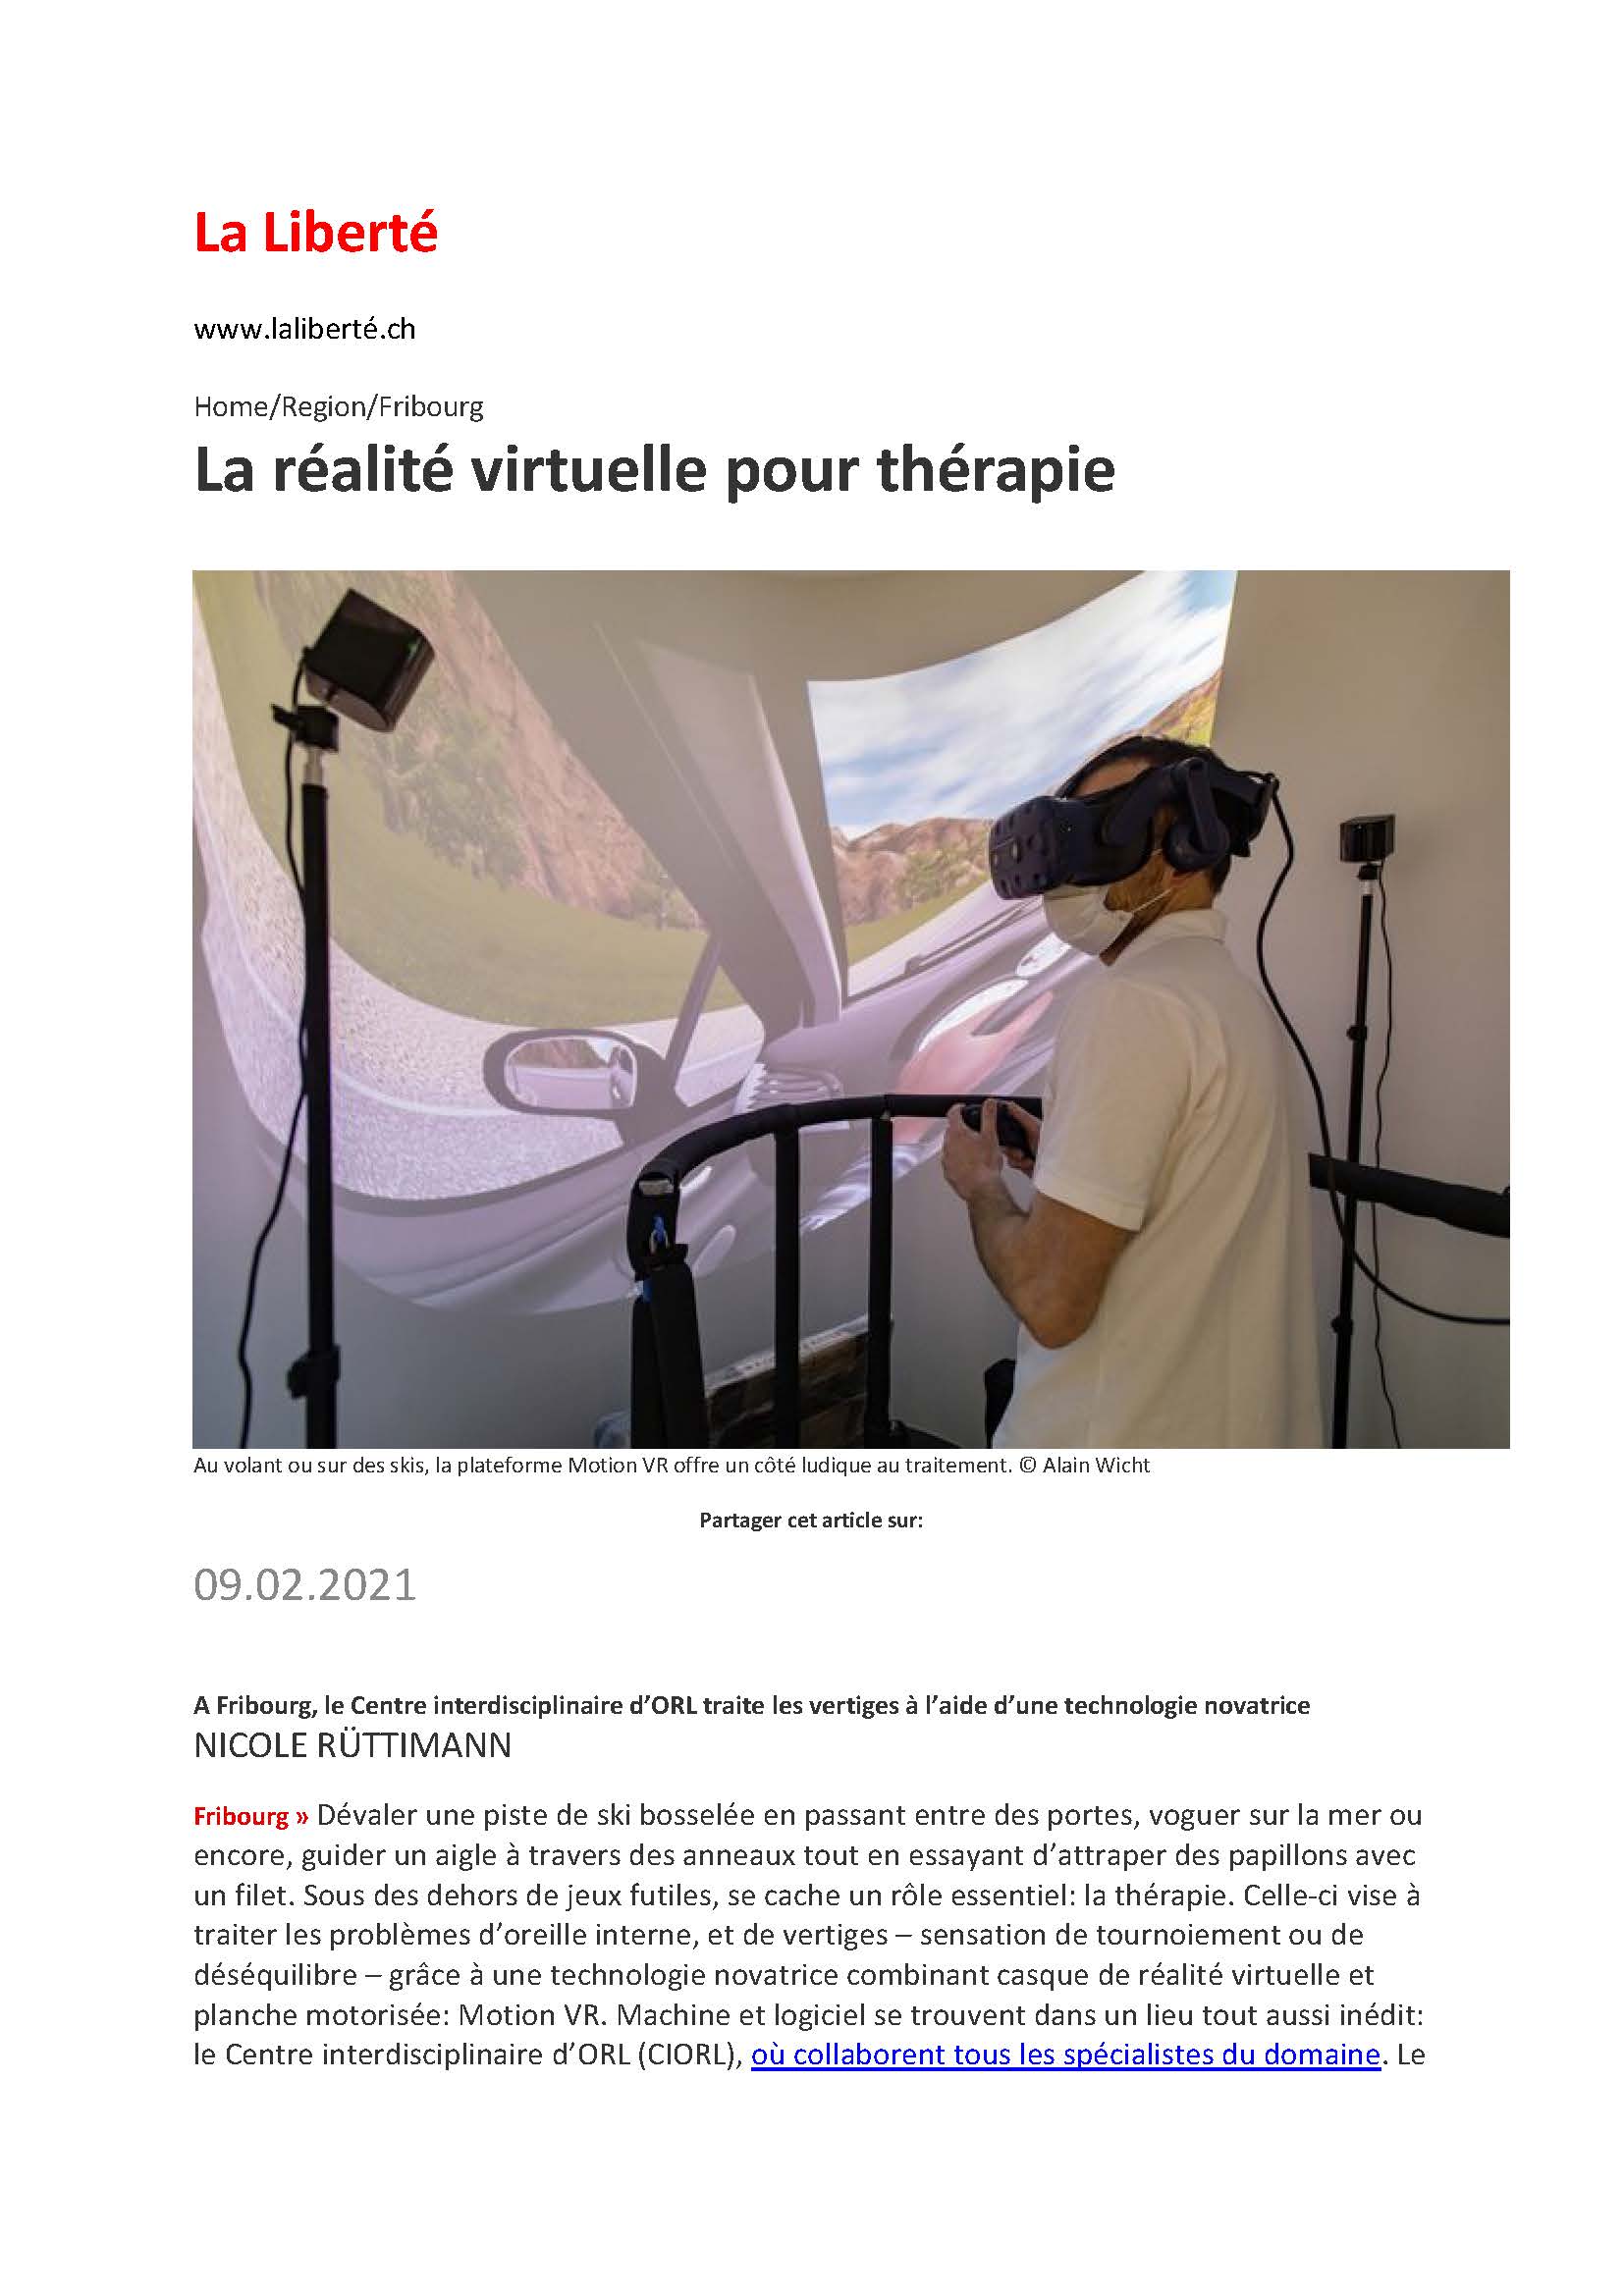 La réalité virtuelle pour thérapie